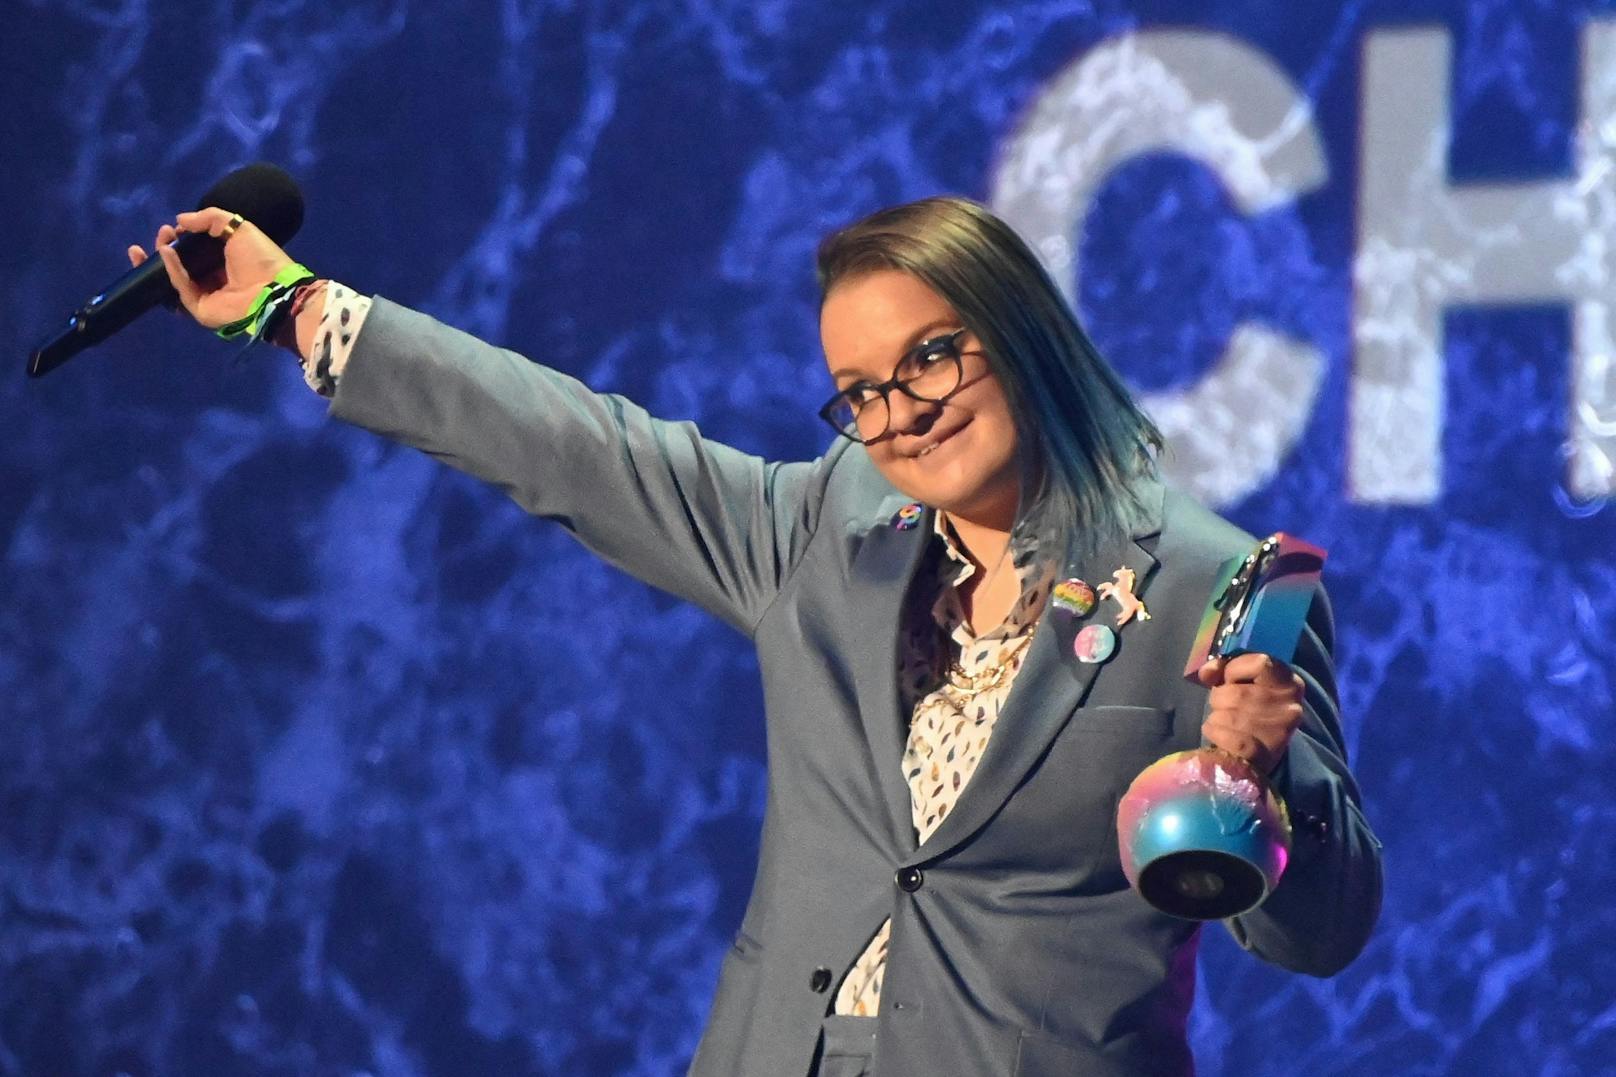 Zeichen für Toleranz gegenüber nicht-heterosexuellen Menschen: Viktoria Radvanyi erhält während des MTV Europe Music Awards den Preis "Generation Change".